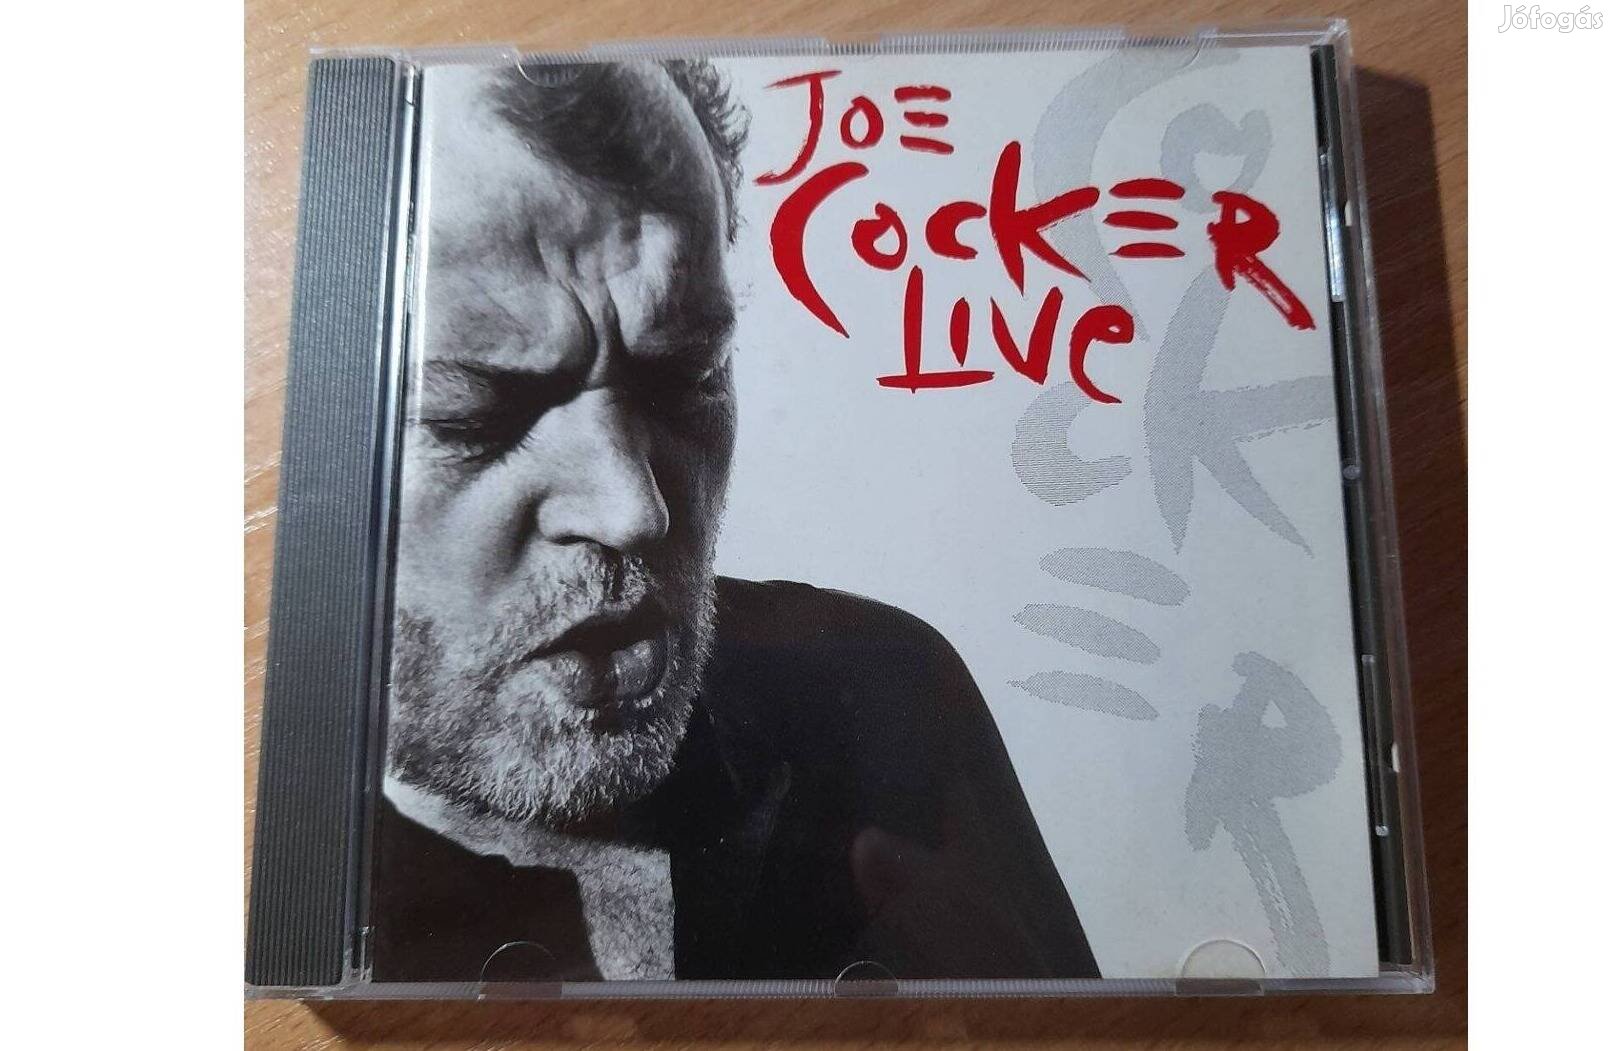 Joe Cocker - Live - CD